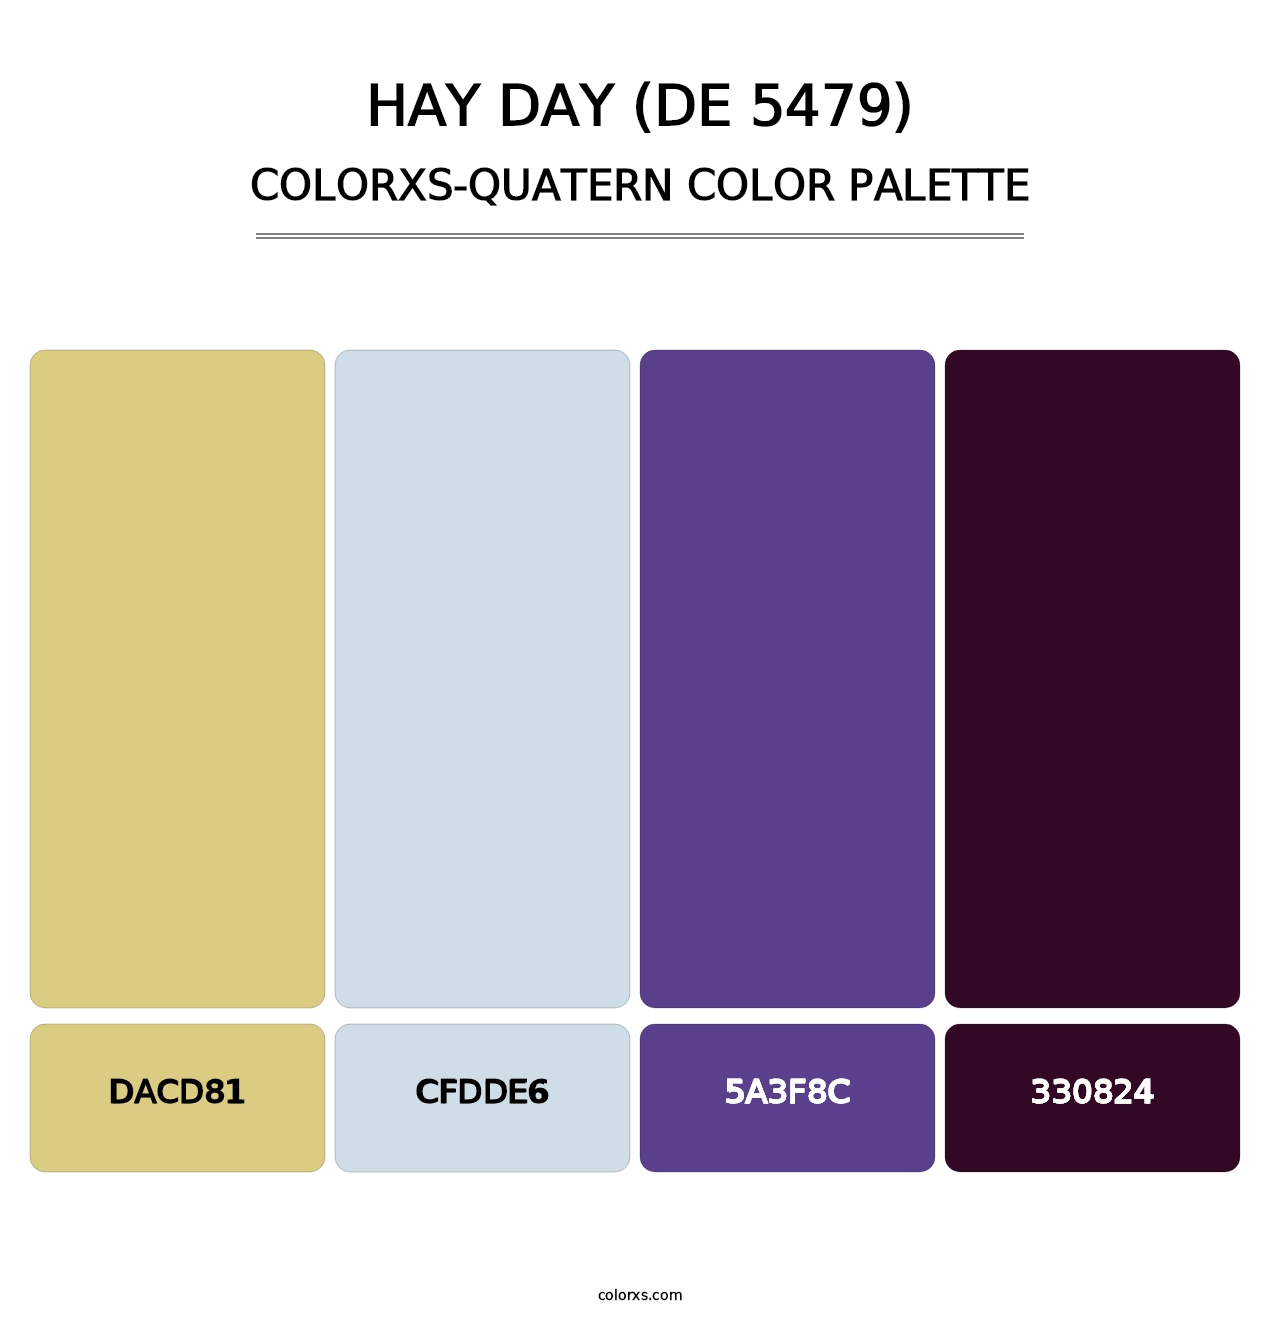 Hay Day (DE 5479) - Colorxs Quatern Palette